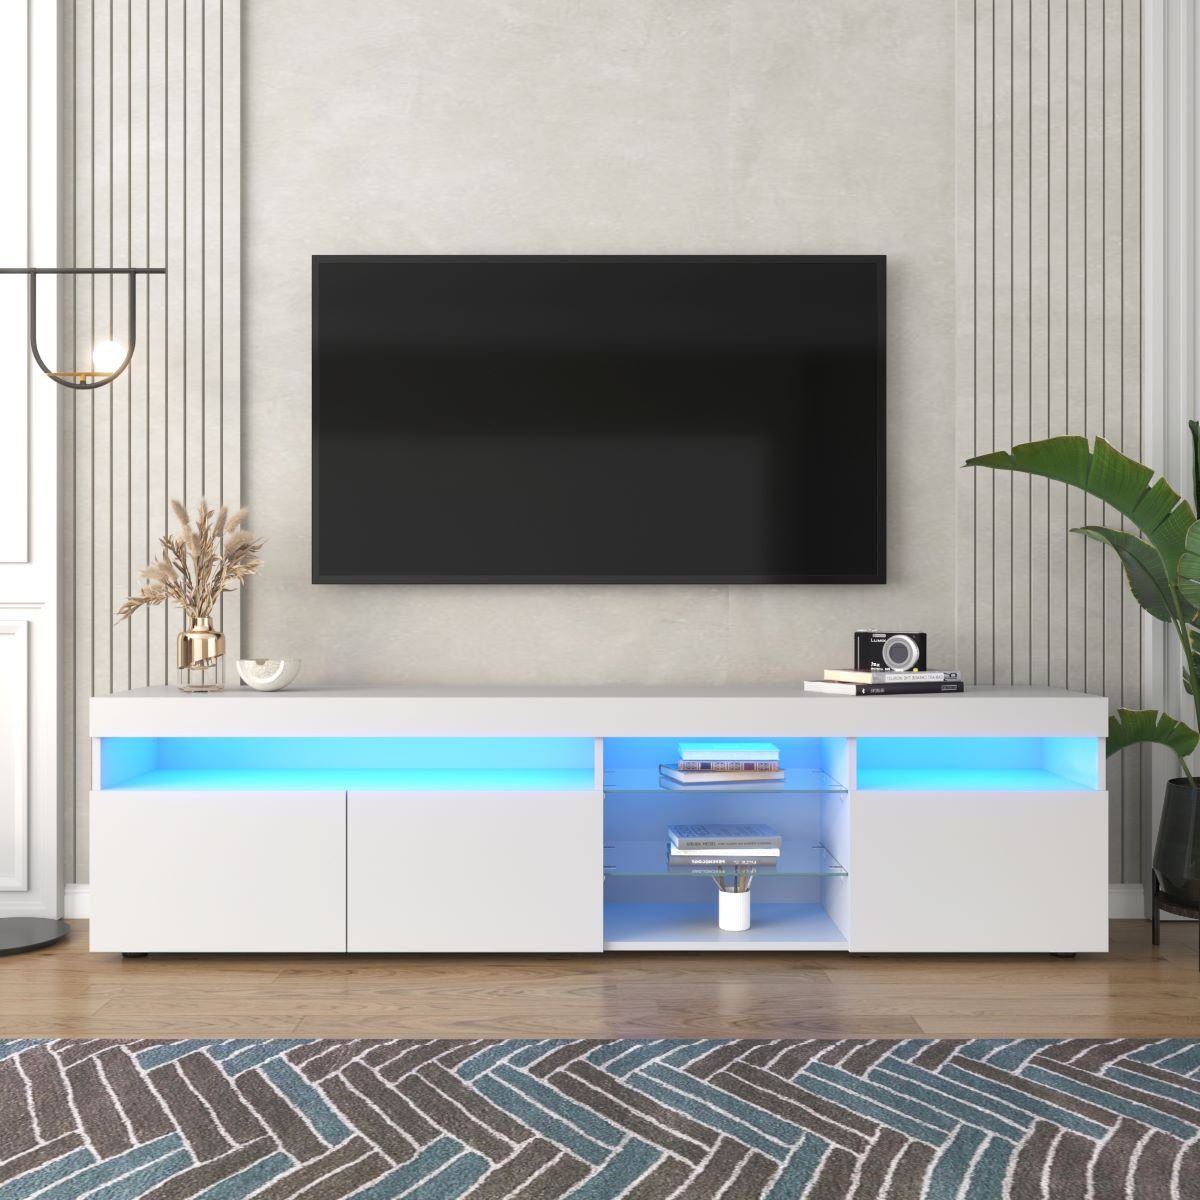 Fangqi TV-Schrank 180x35x45cm TV-Schrank, mit vierfarbigen LED-Leuchten,8 Stauräume (maximal belastbar 30kg)